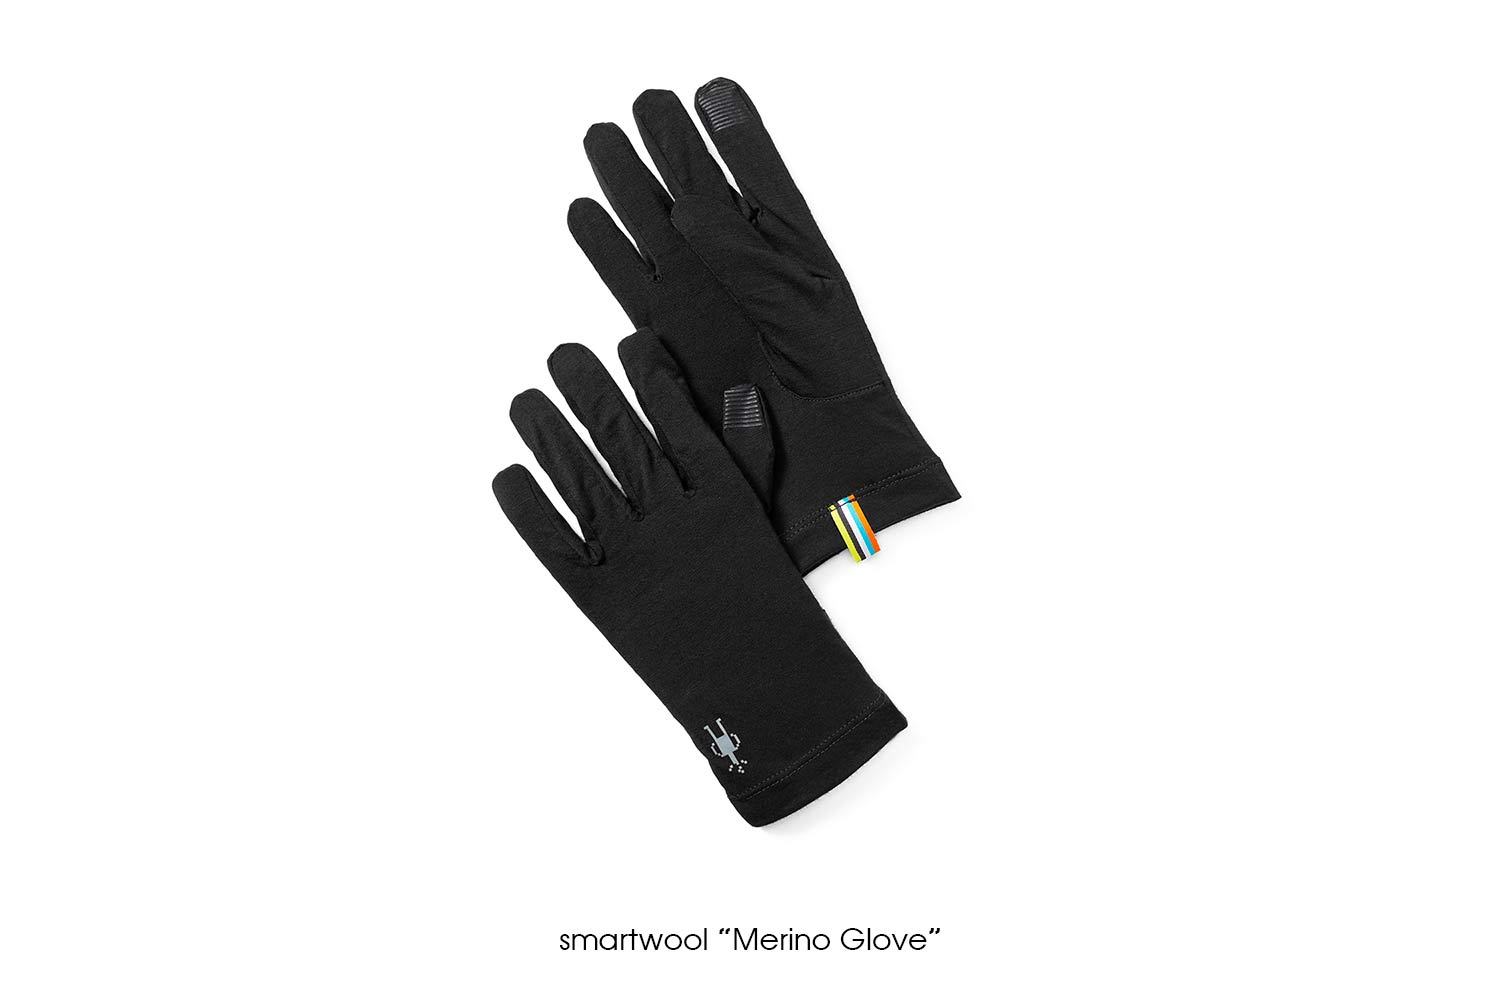 smartwool "Merino Glove"